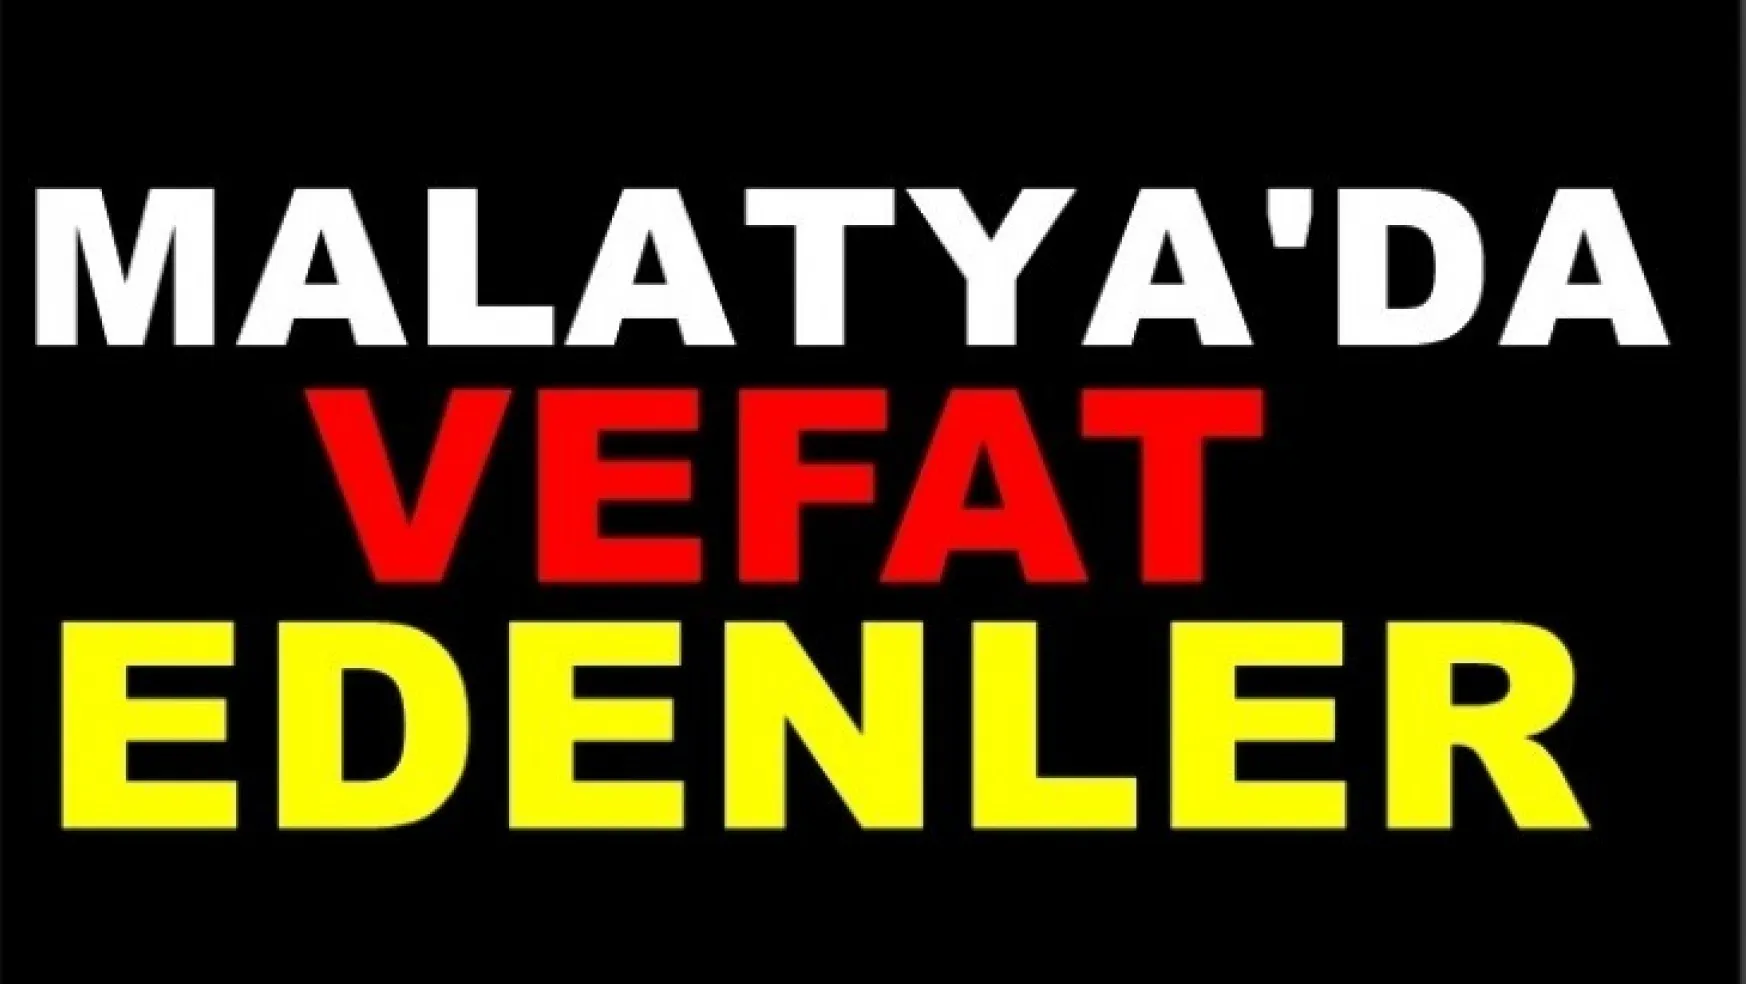 Malatya'da Bugün 14 Kişi Vefat Etti